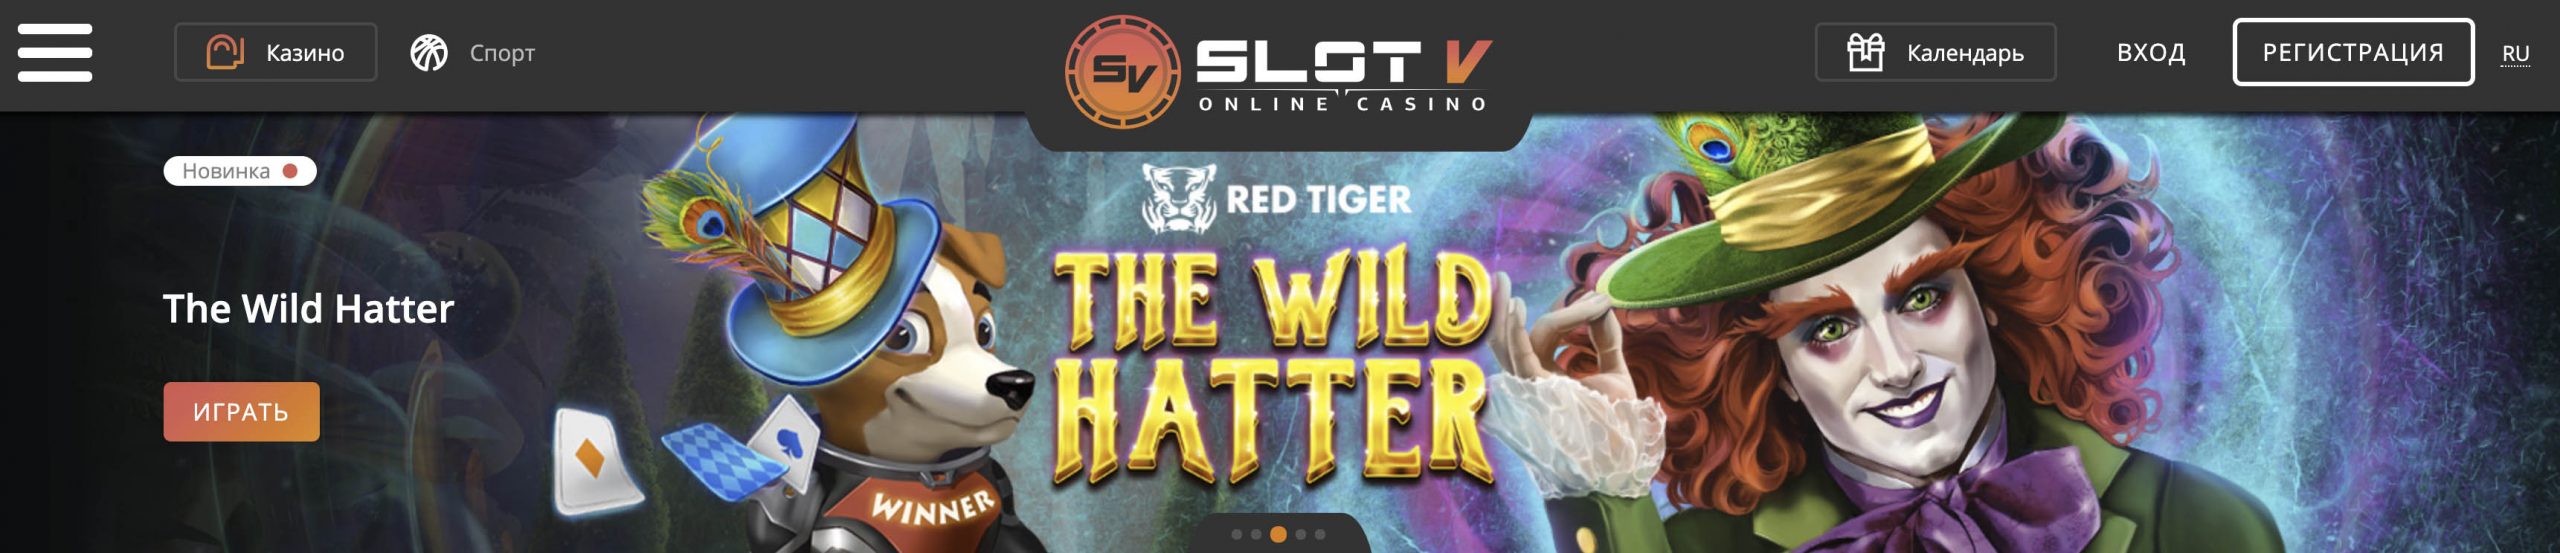 slotv casino homepage